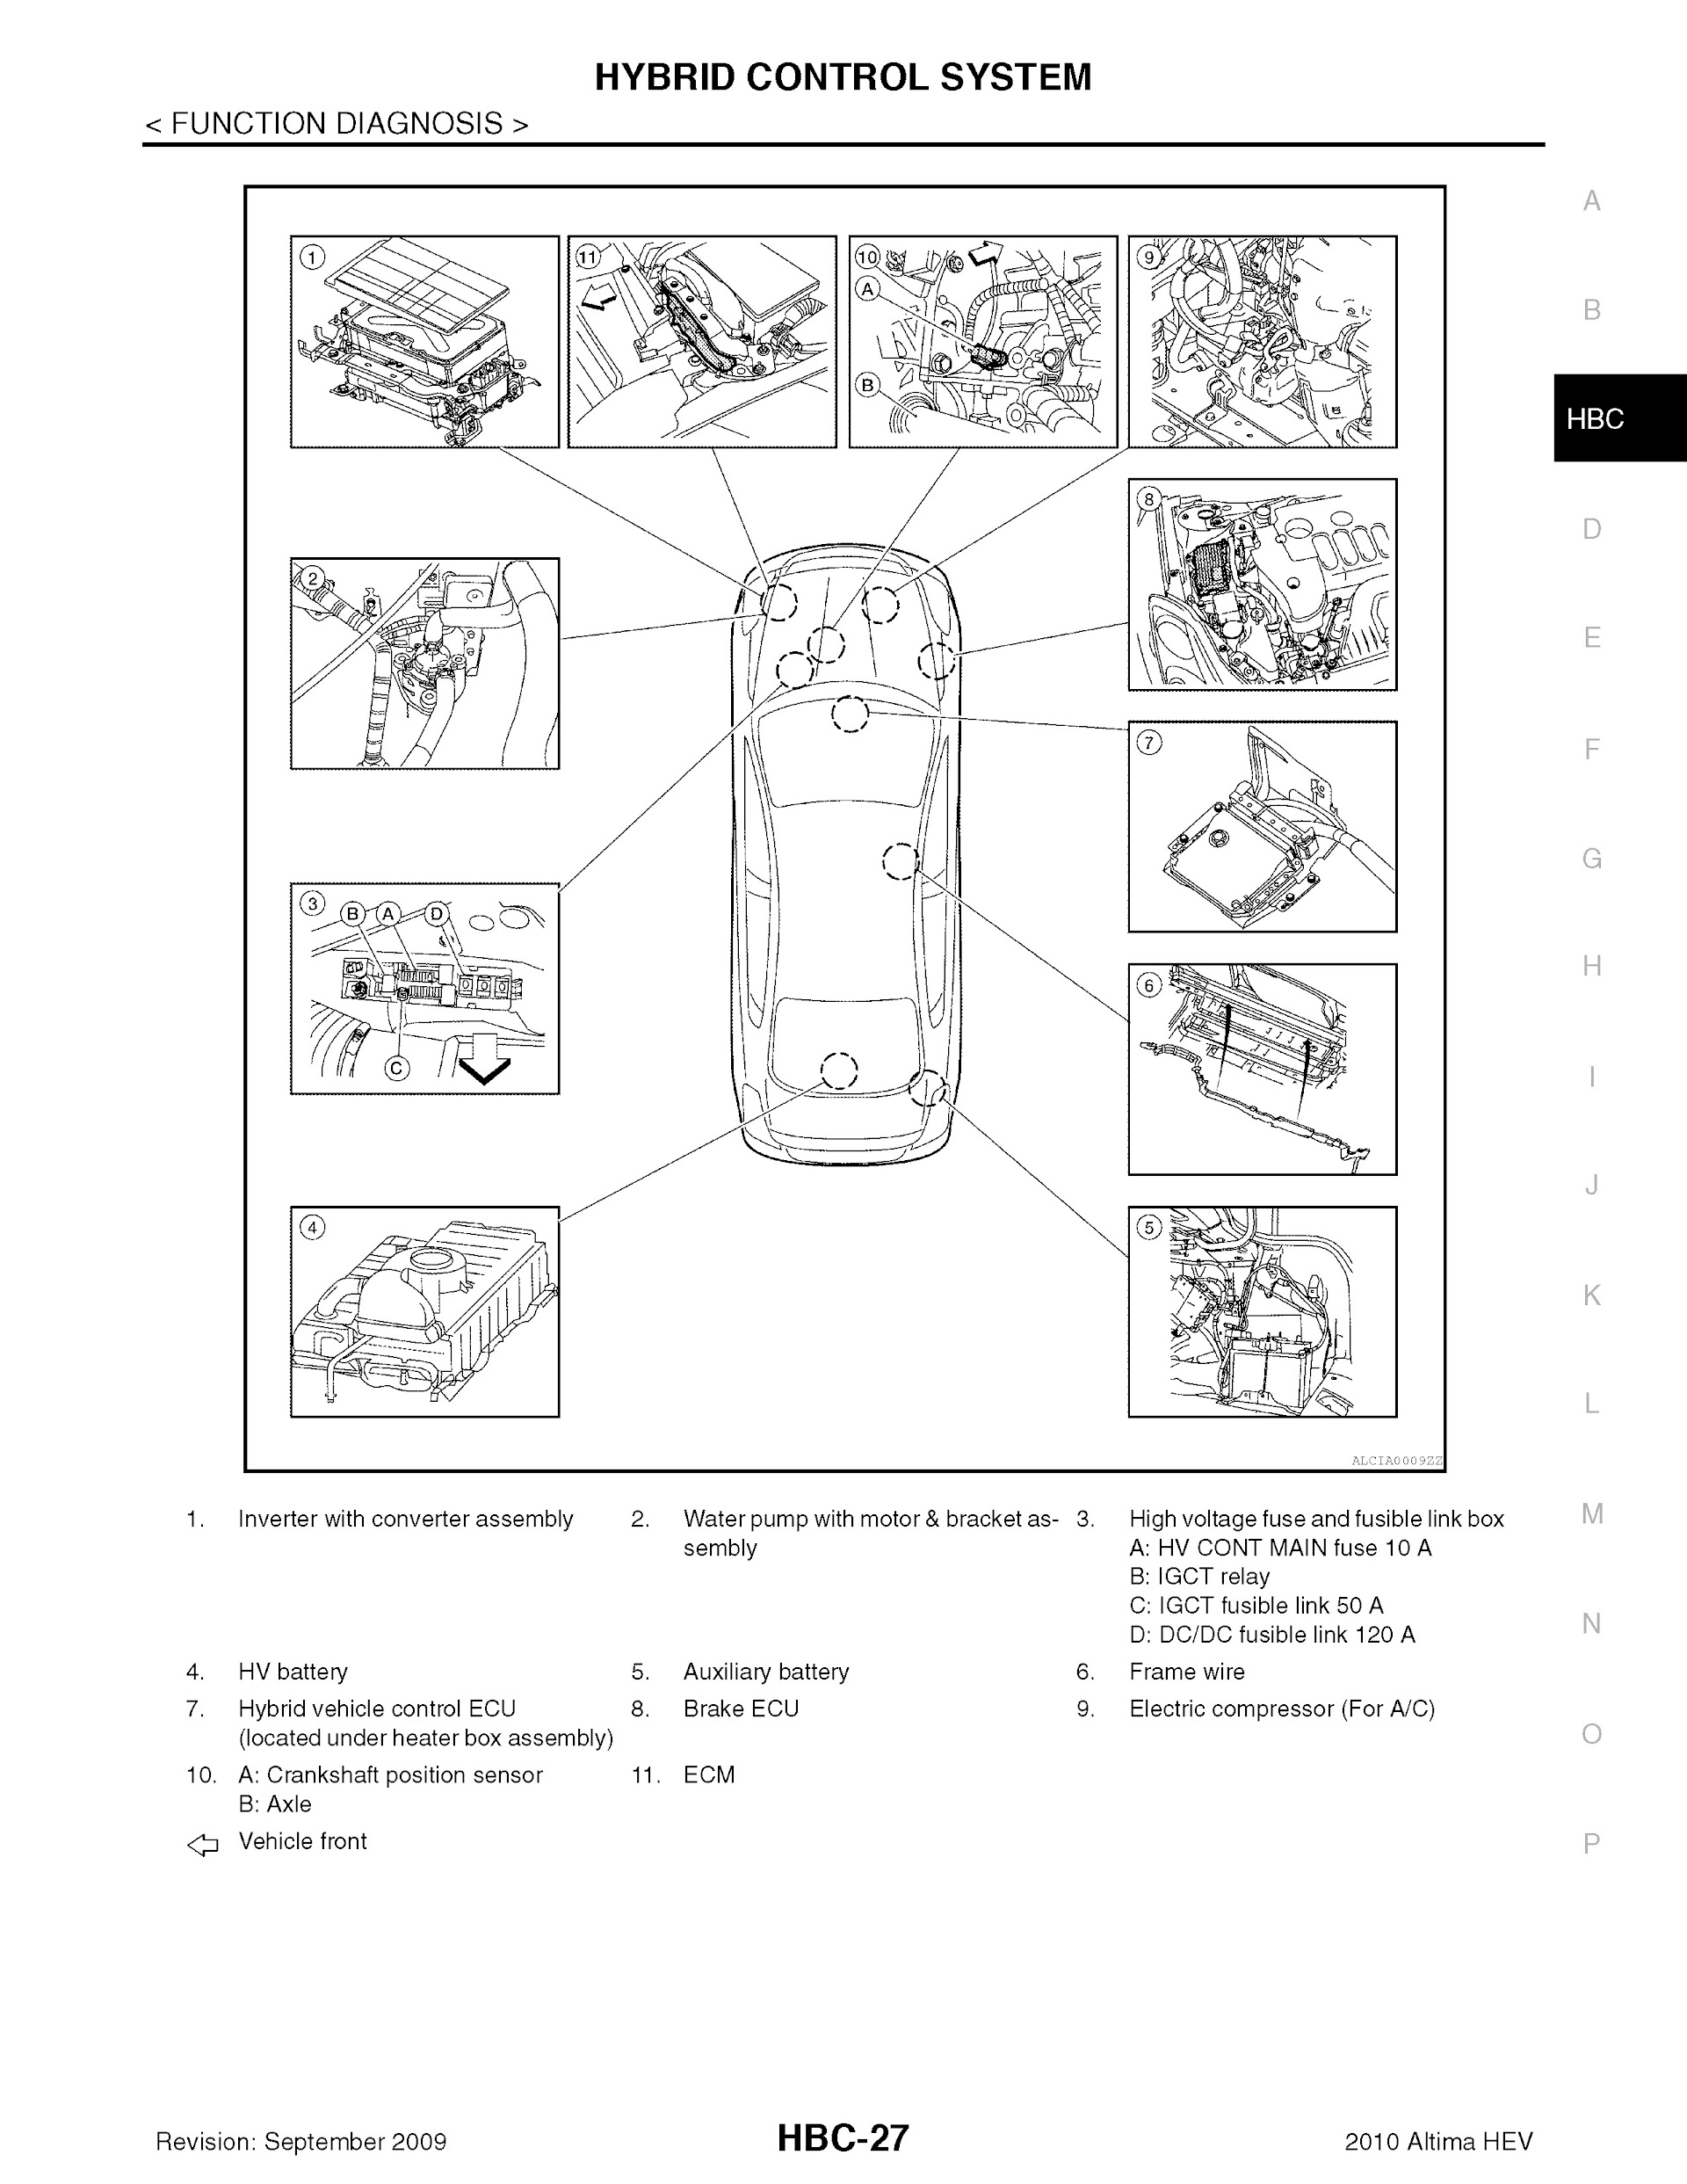 2010 Nissan Altima Hybrid Repair Manual.